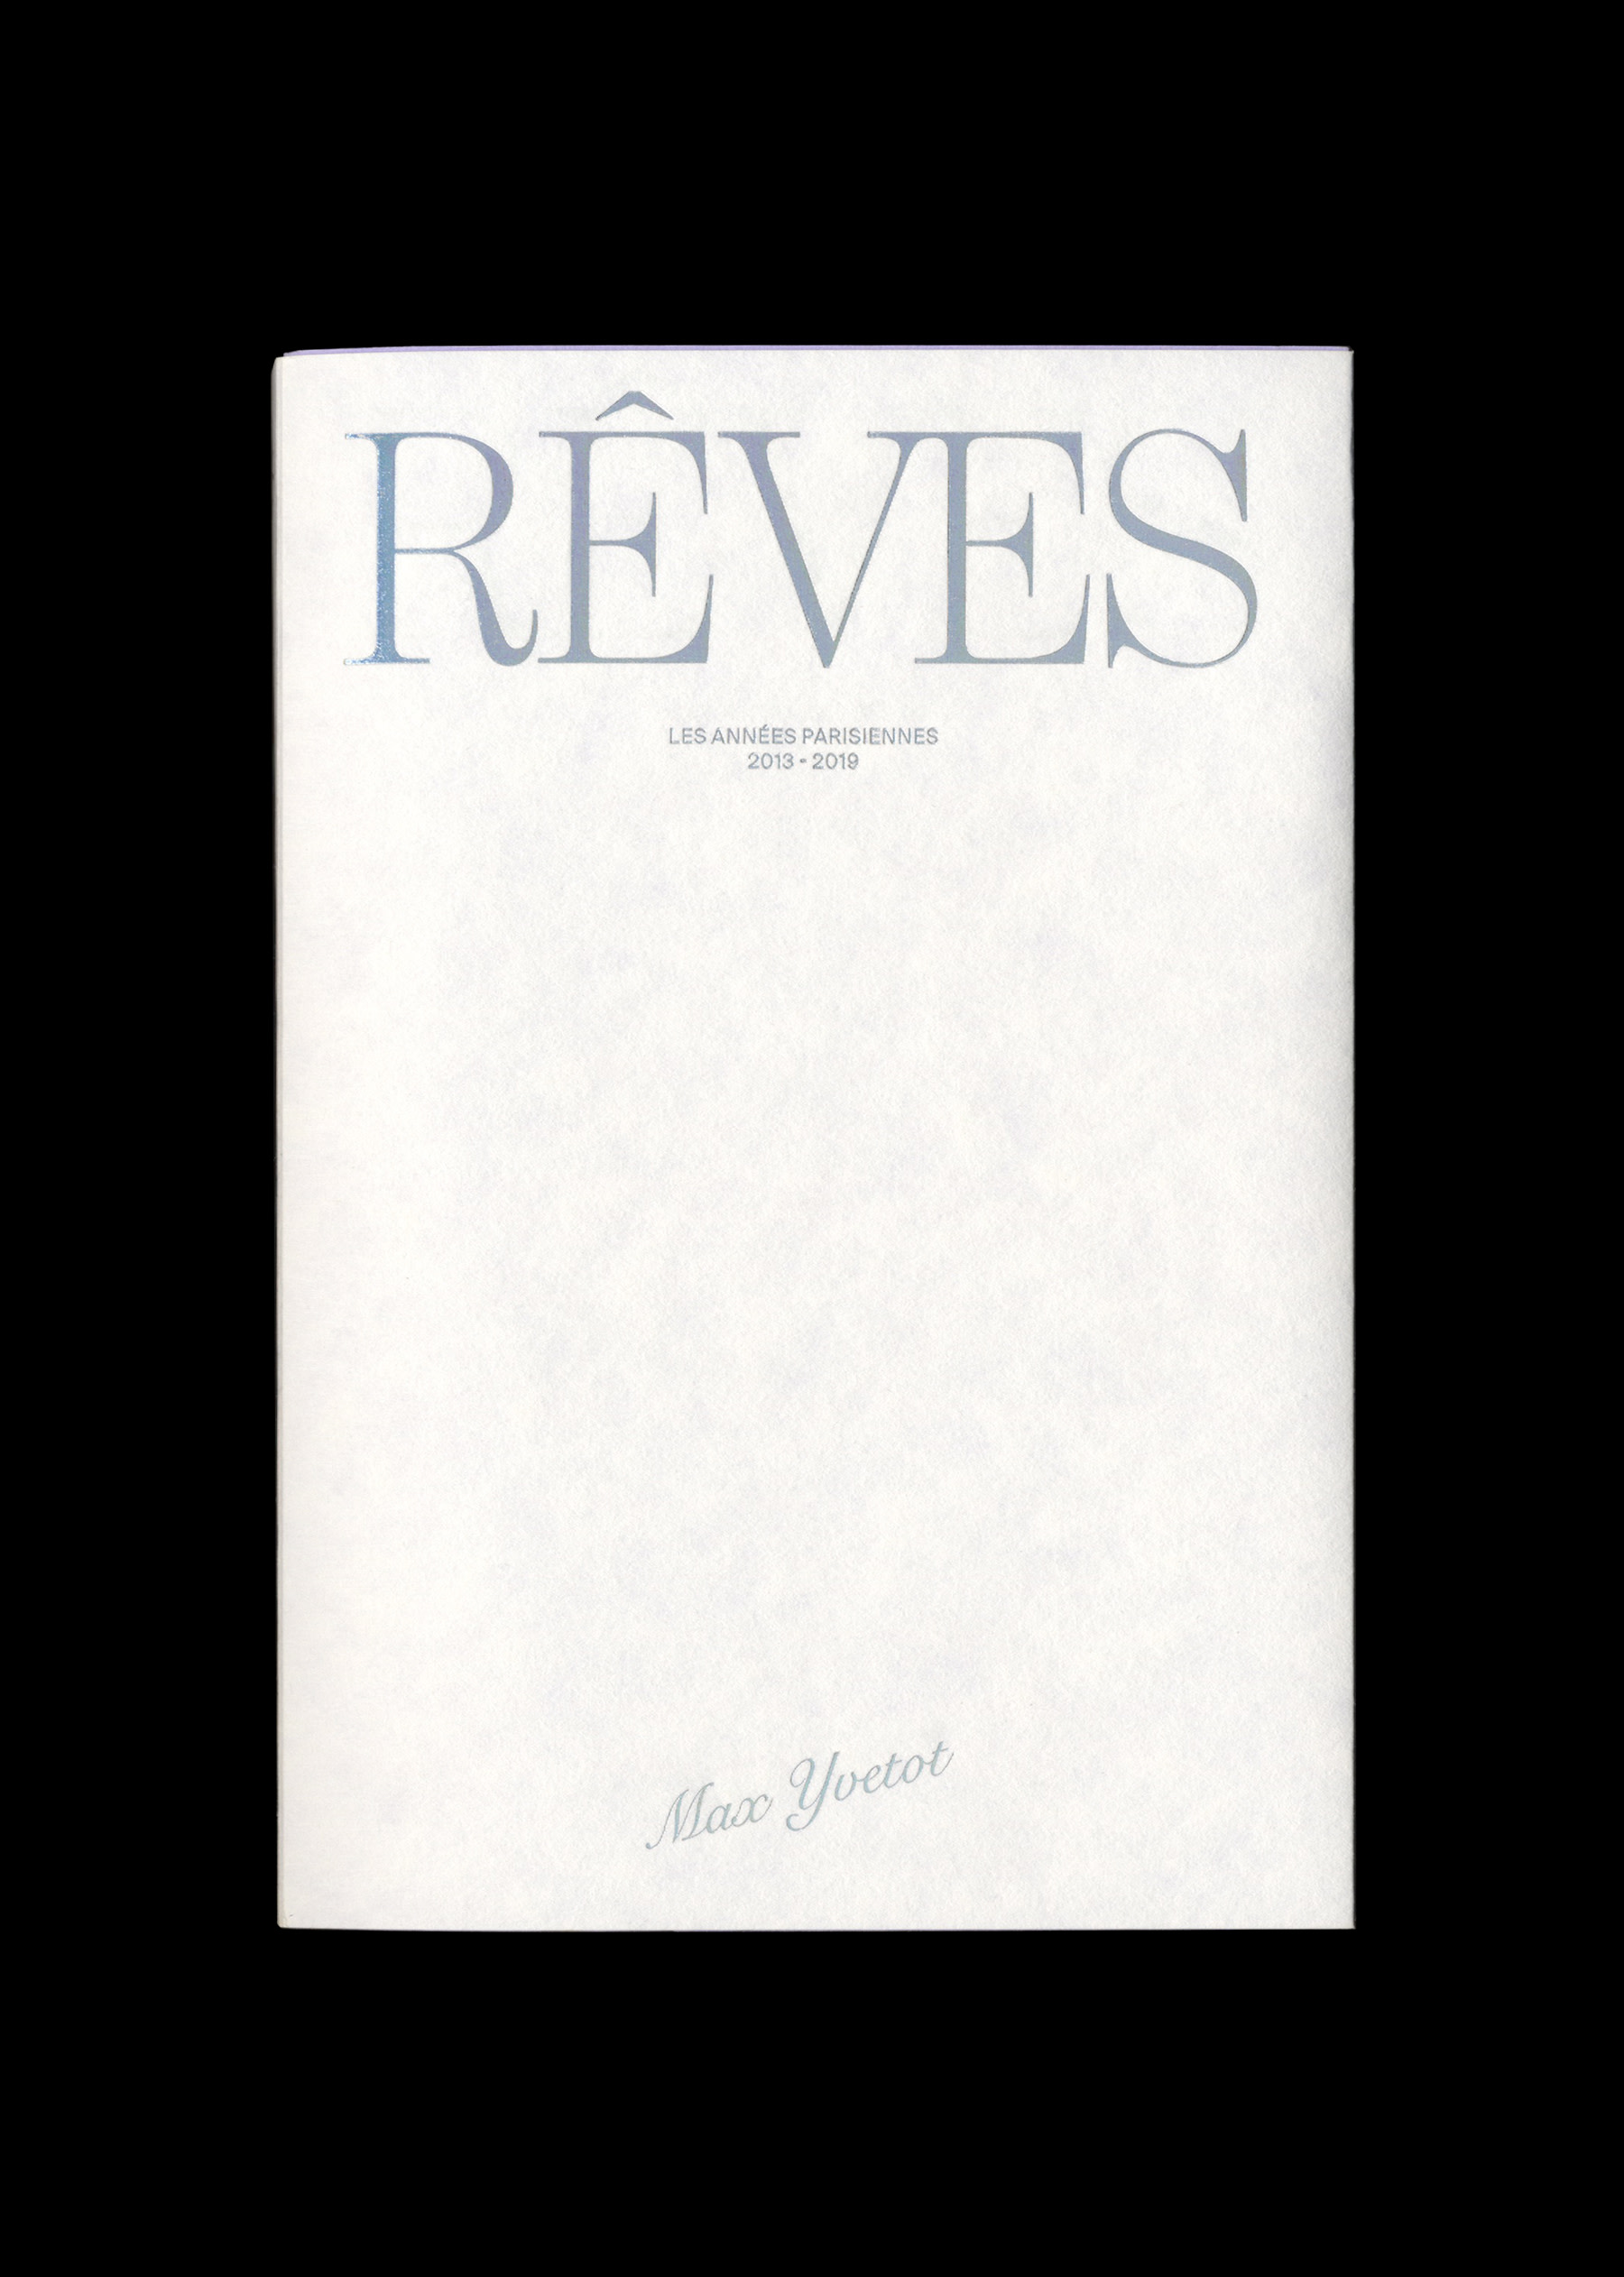 Reves, les années parisiennes. Max Yvetot. Mitsu edition